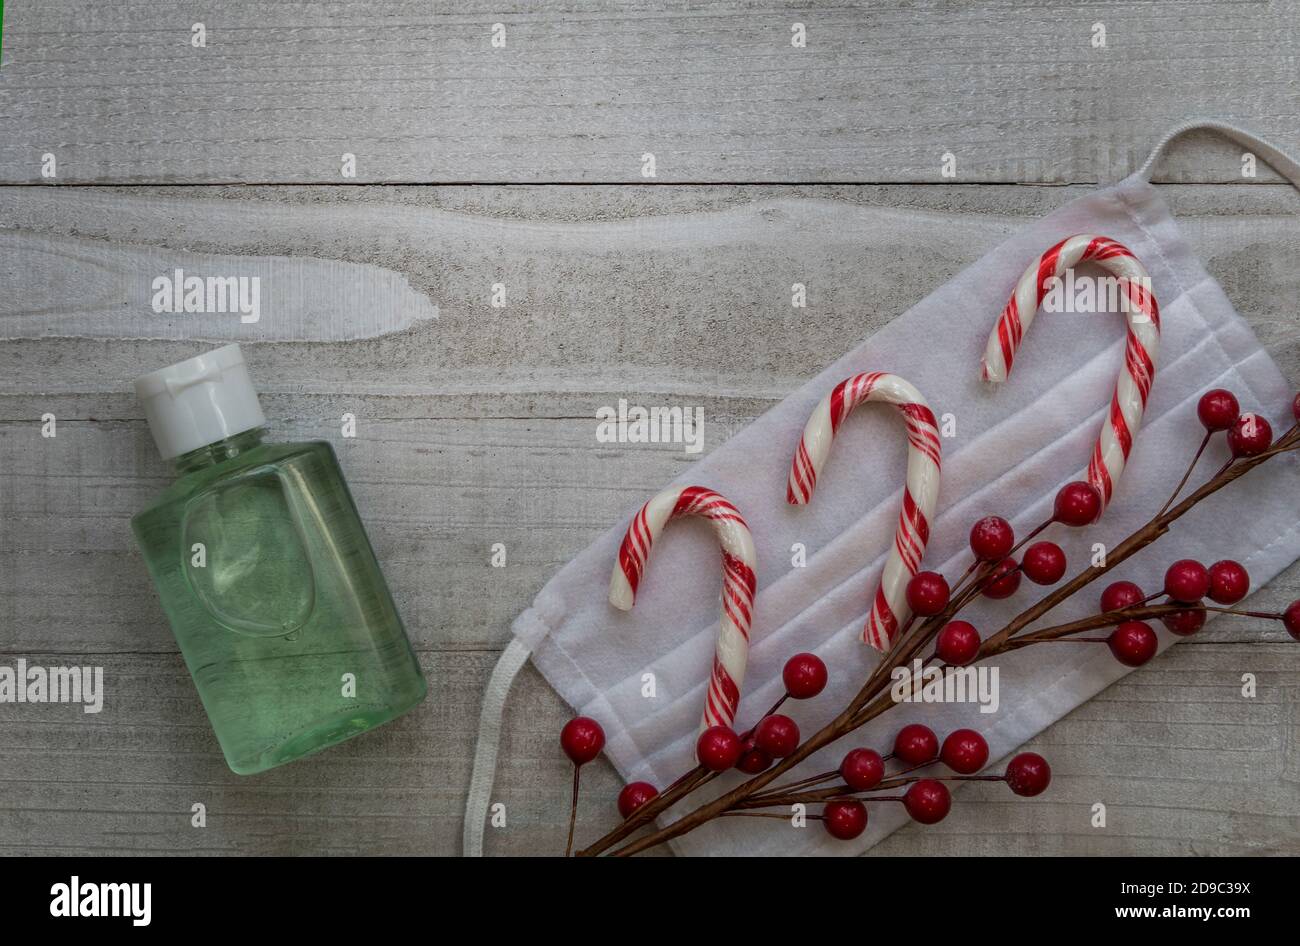 Maske und Handdesinfektionsmittel sicher gesunde Feiertage Konzept mit festlichen Candy Stöcke und rote Beeren grau Hintergrund flach Lay Kopie Platz Stockfoto